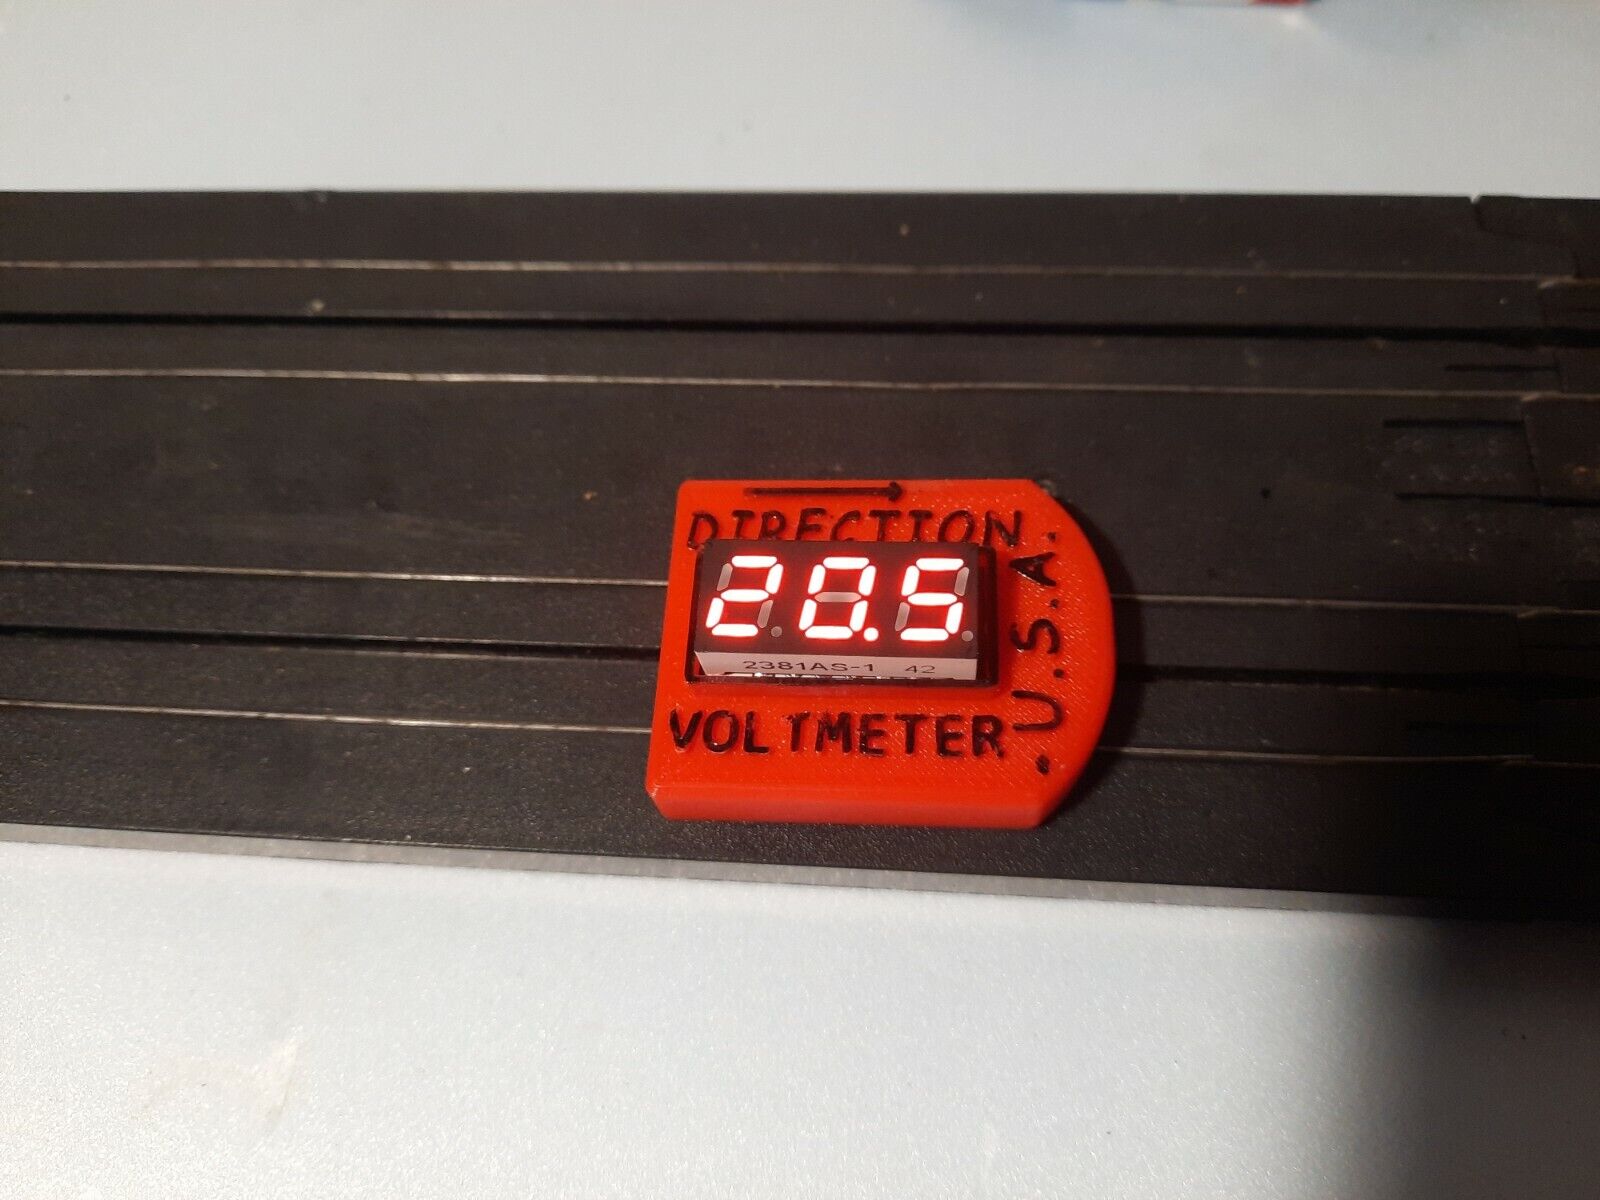  Slot  Car - Track -On valuator Voltage  Continuity Tester / Voltmeter  ⚡ 